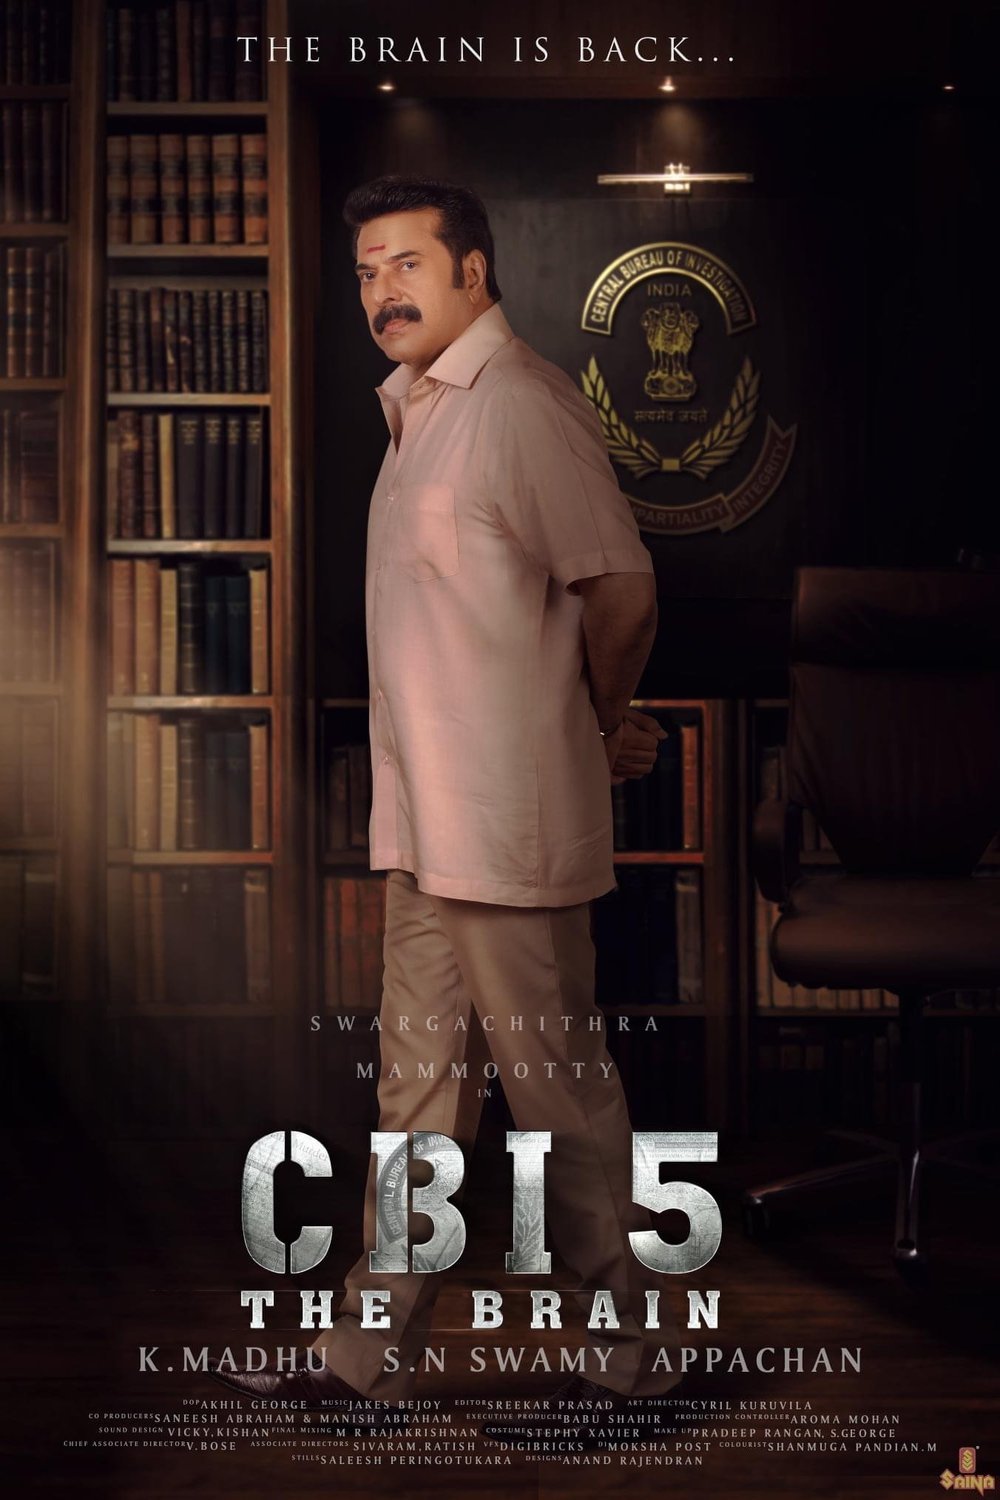 Malayalam poster of the movie CBI 5: The Brain